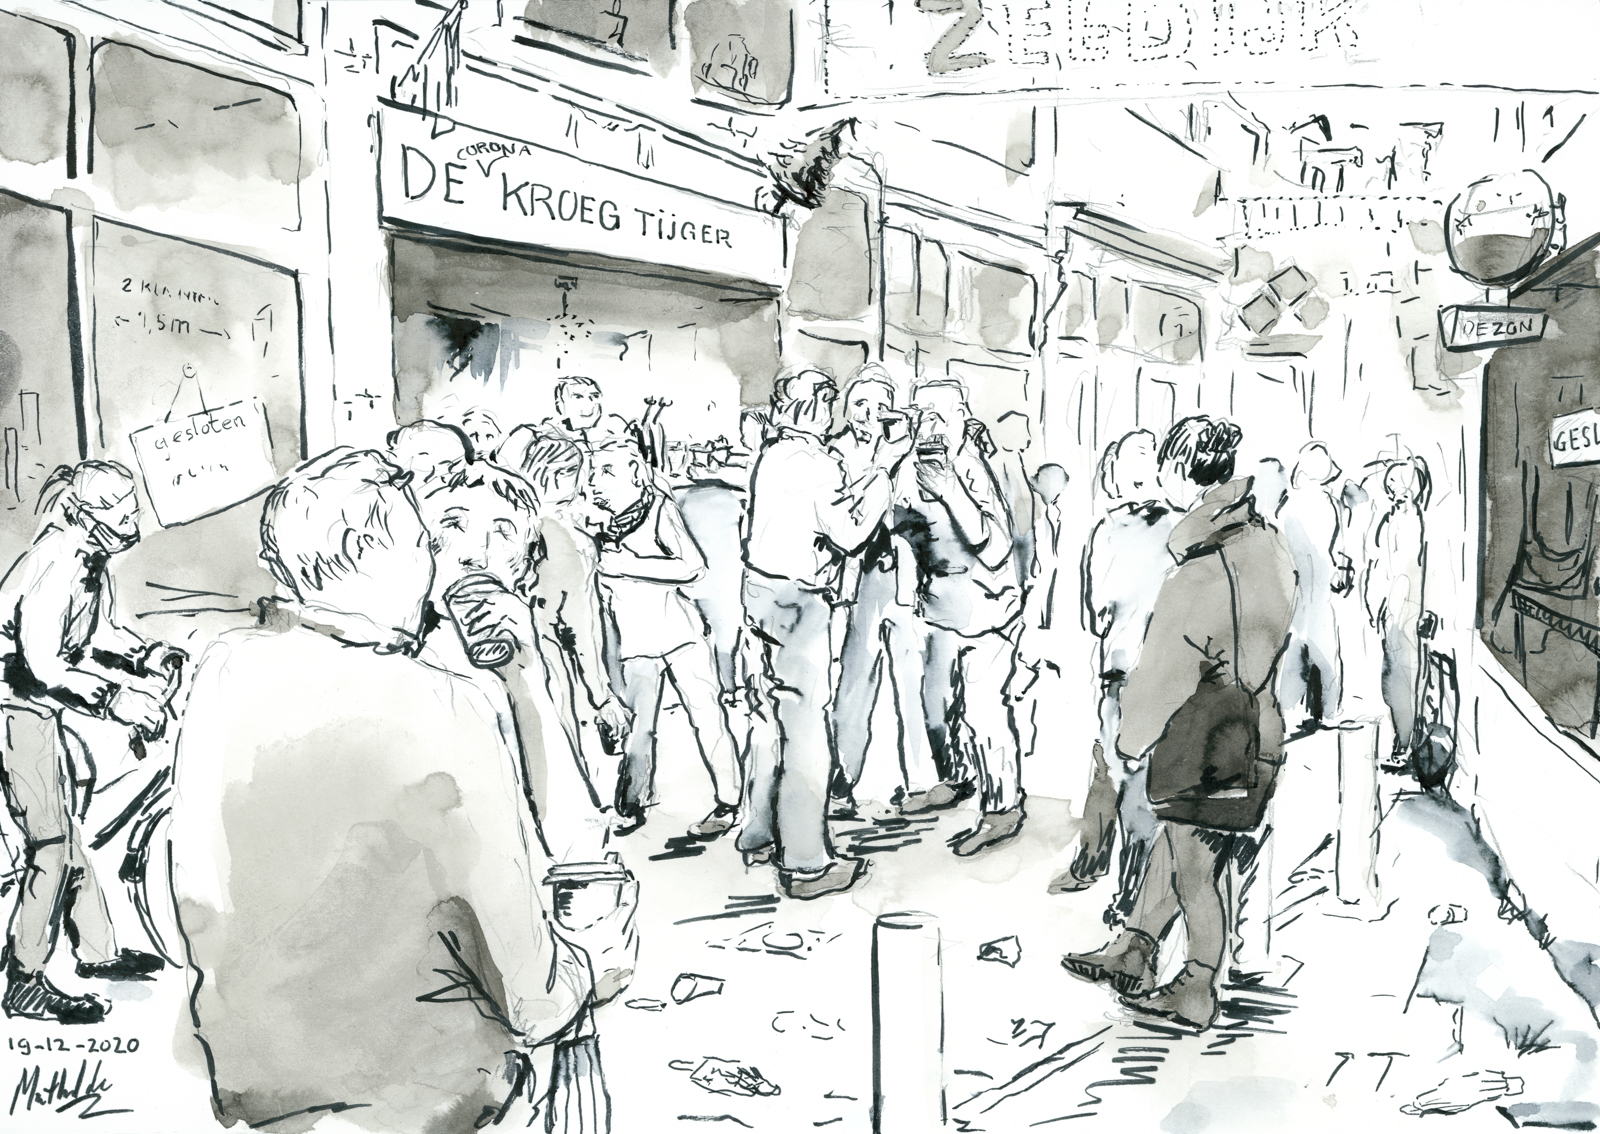 Voor een kroeg is een menigte zichtbaar aangeschoten met koffie bekers in de hand die de alcohol moet verhullen. Een inkt tekening door Mathilde muPe.